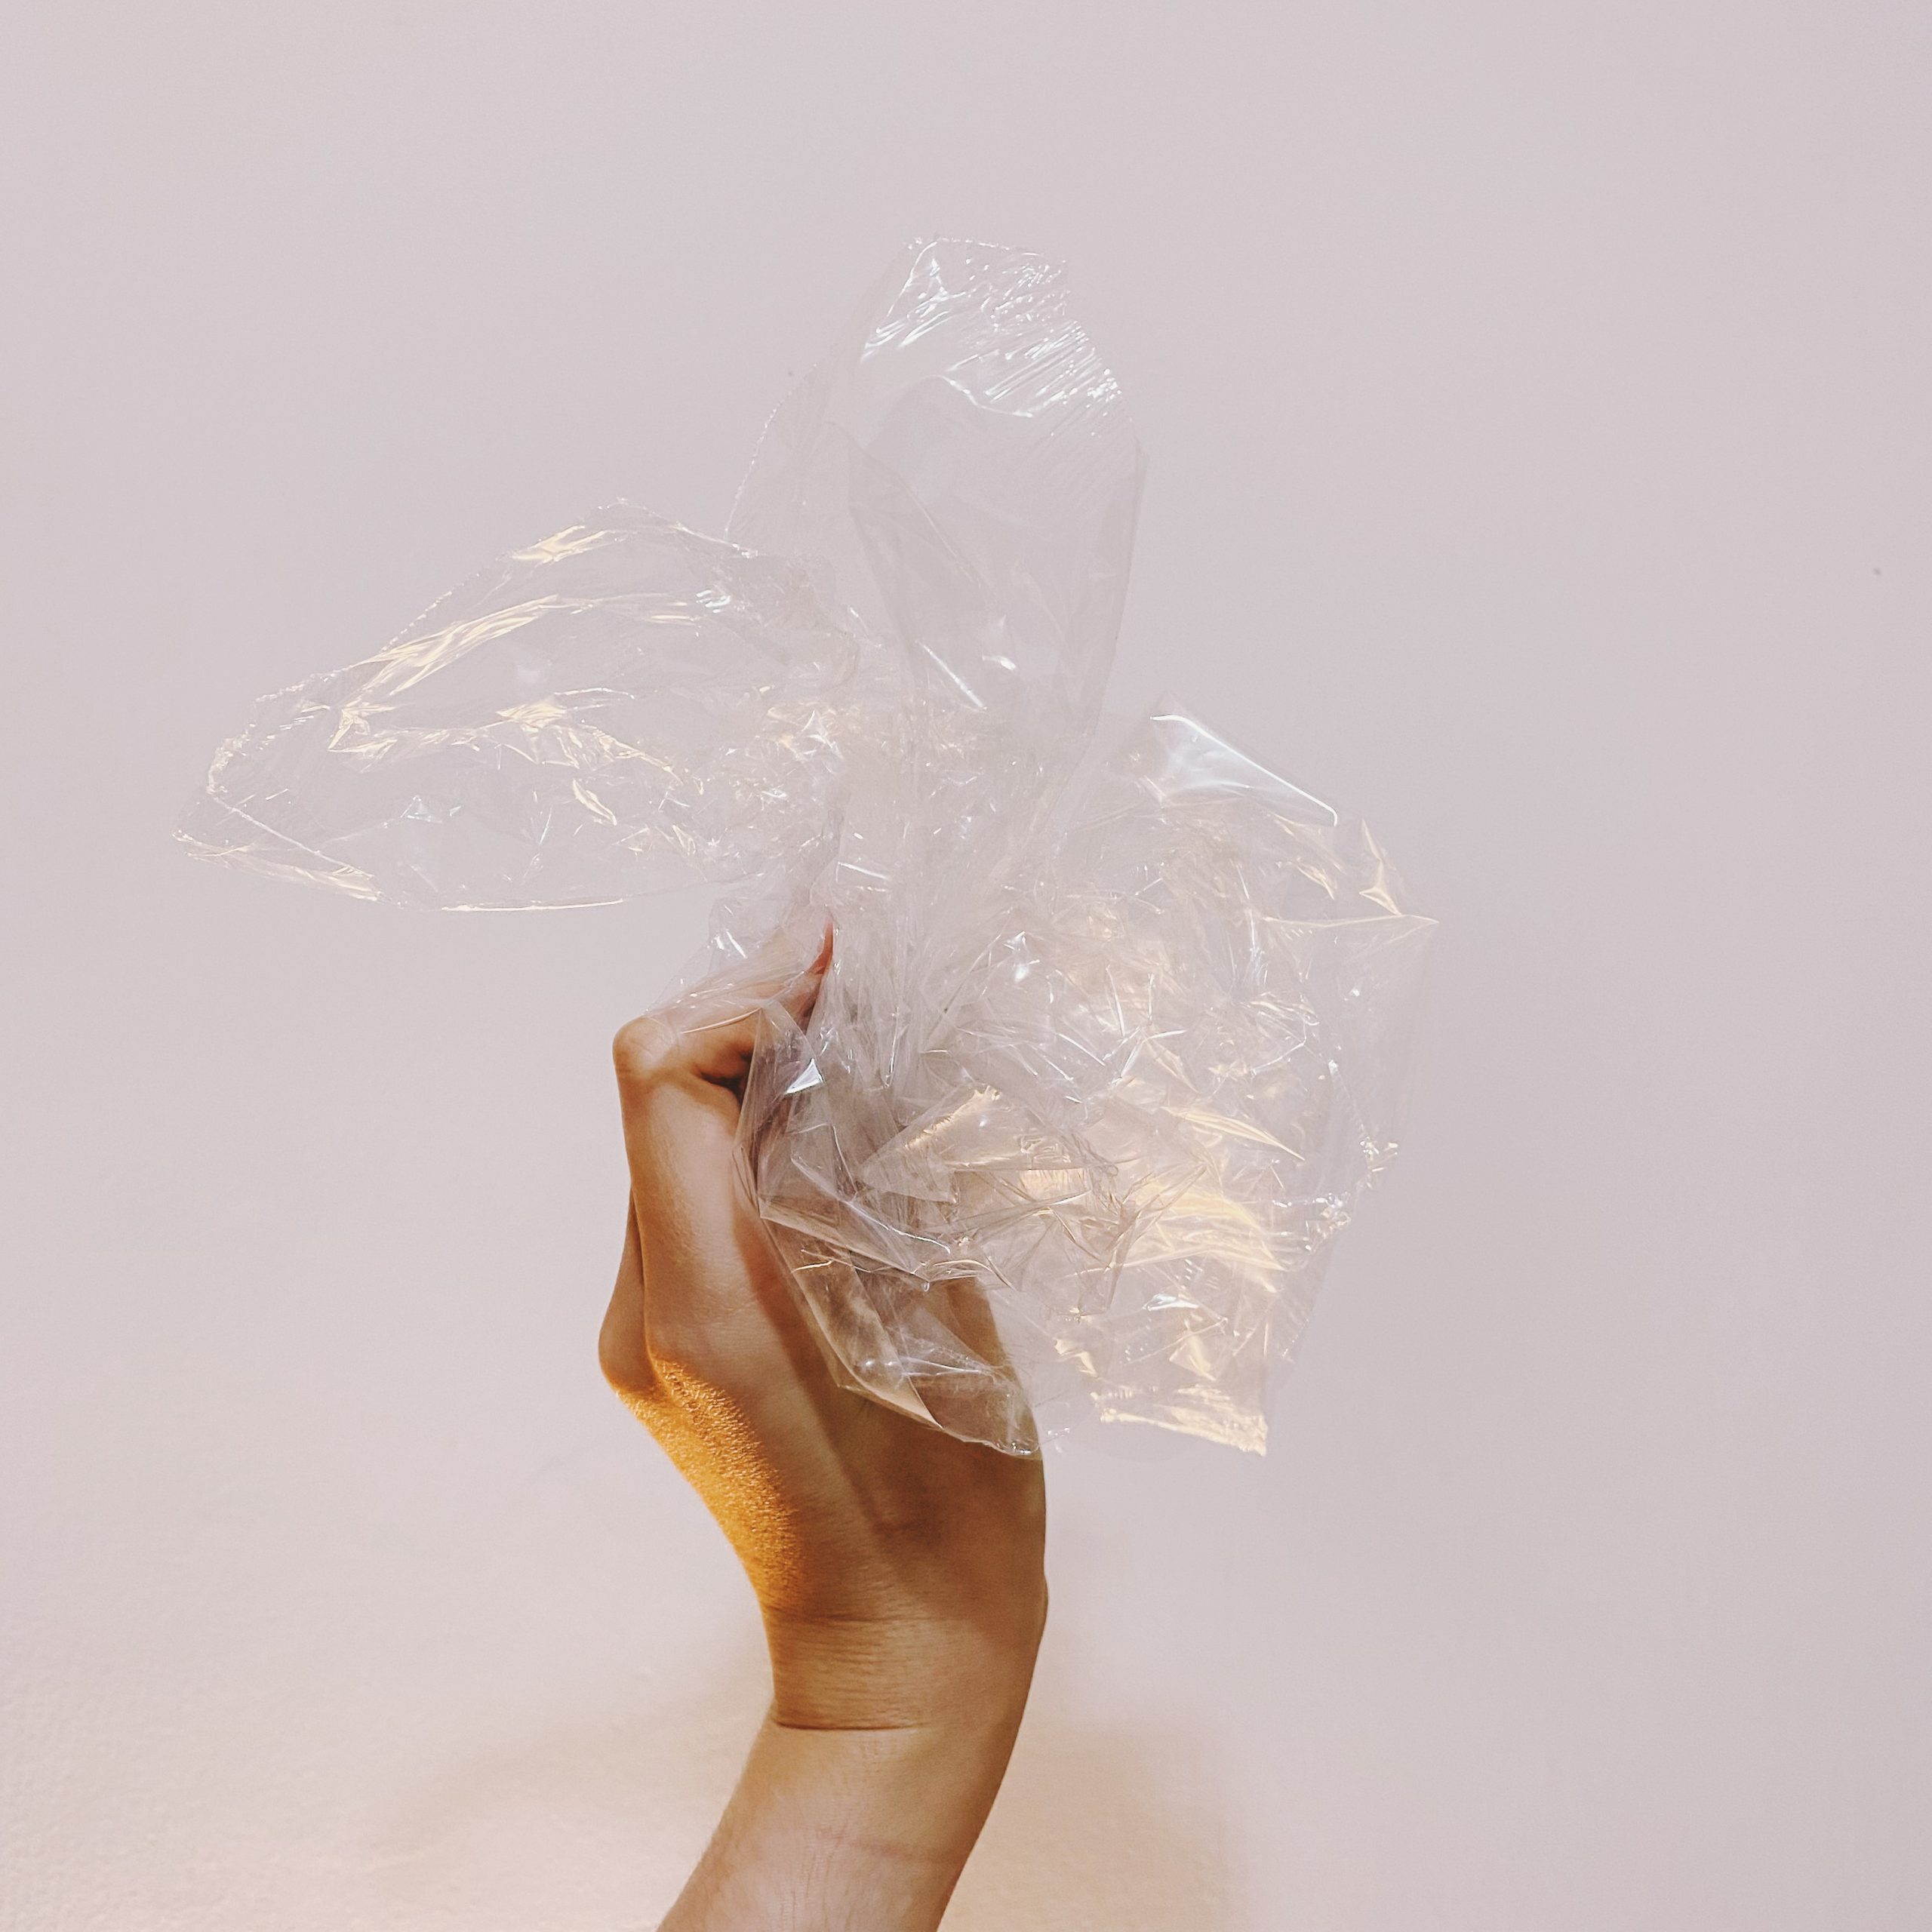 Fotografia, de dia, em ambiente interno de uma mão de uma pessoa branca segurando um monte de plástico transparente, do tipo fininho, na frente de uma parede branca